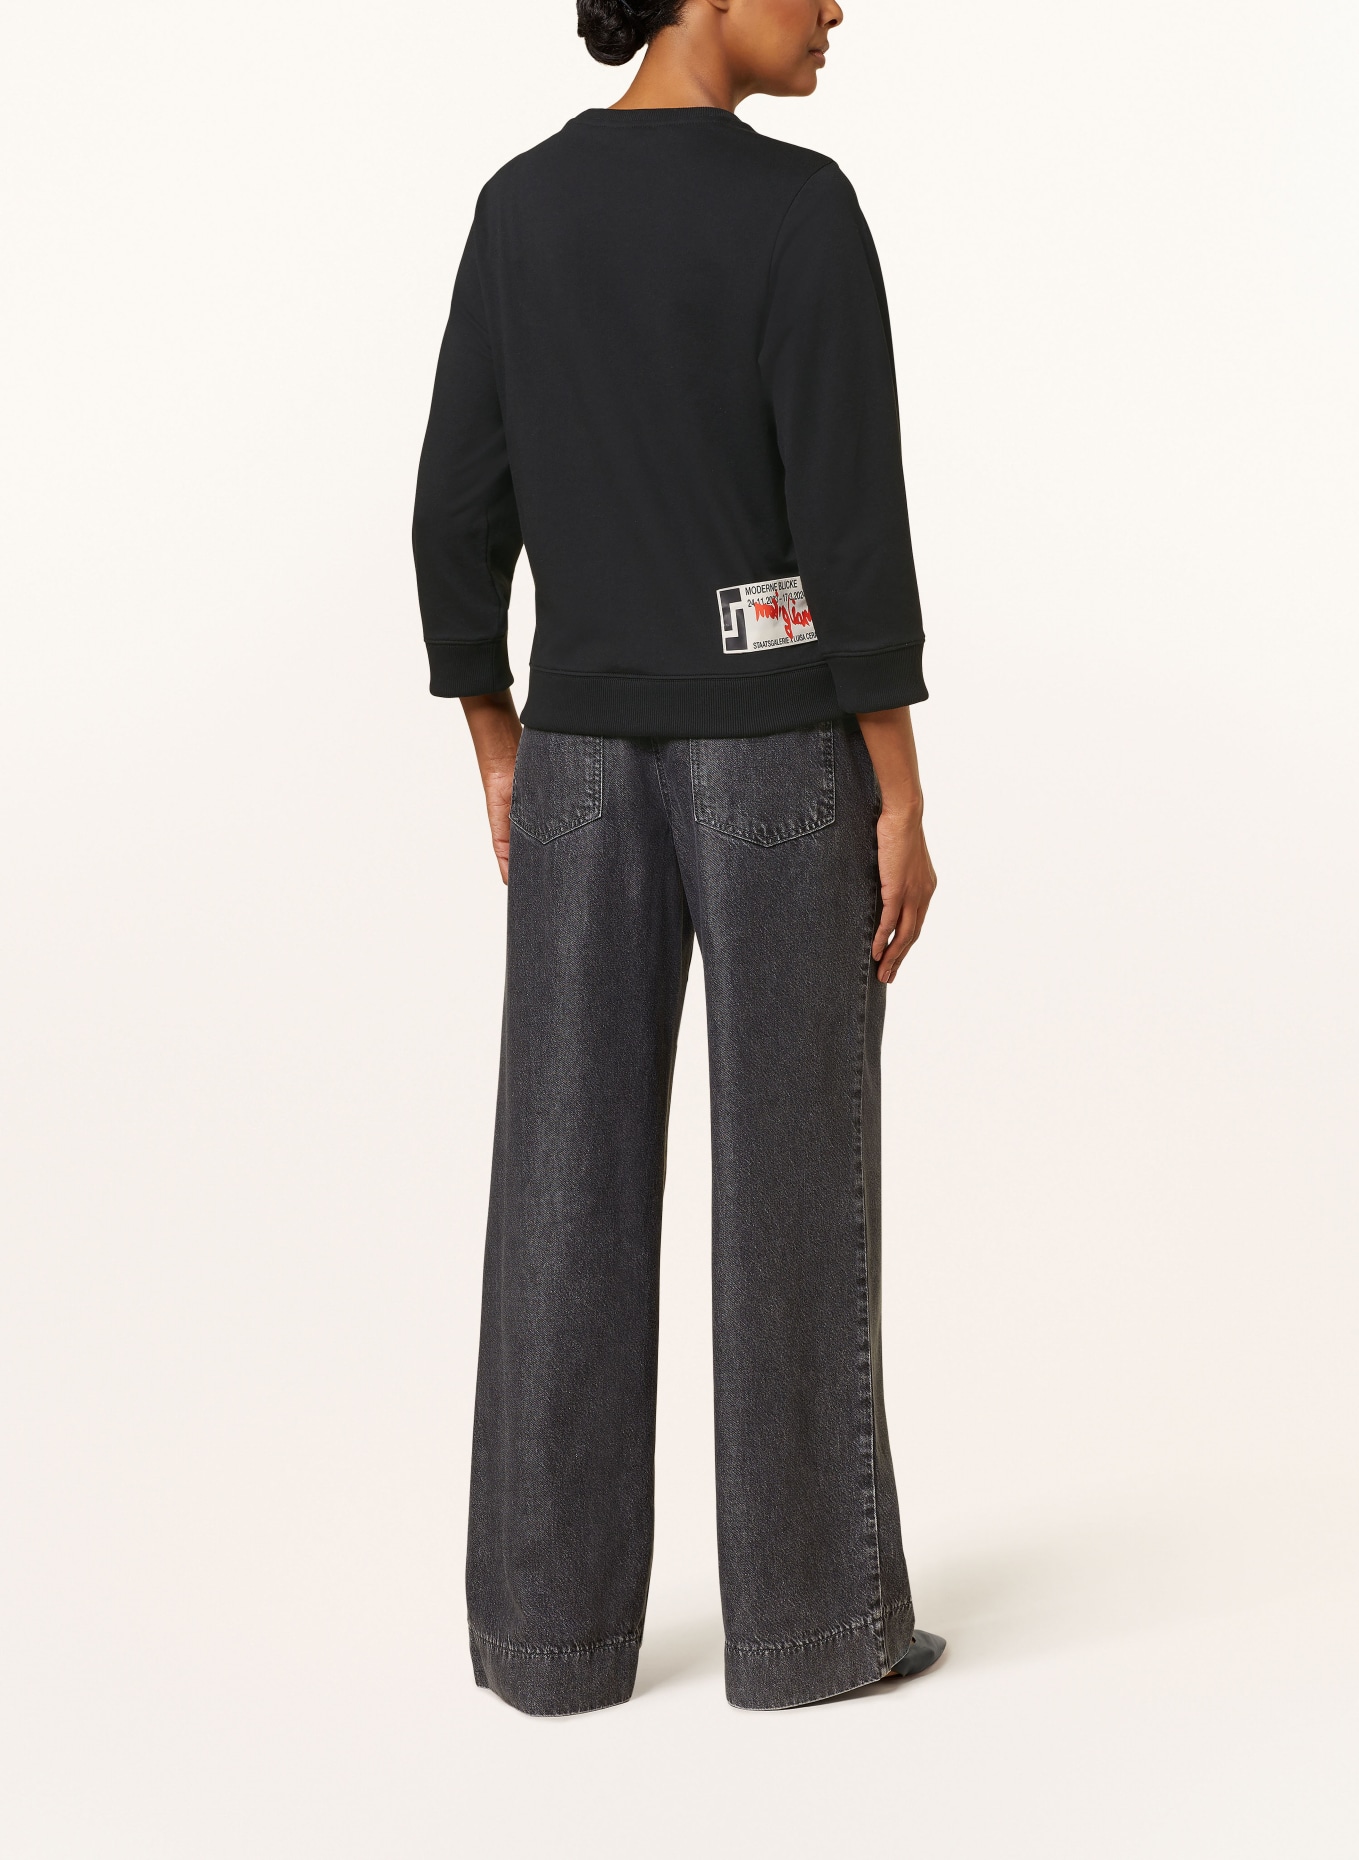 LUISA CERANO Sweatshirt, Color: BLACK (Image 3)